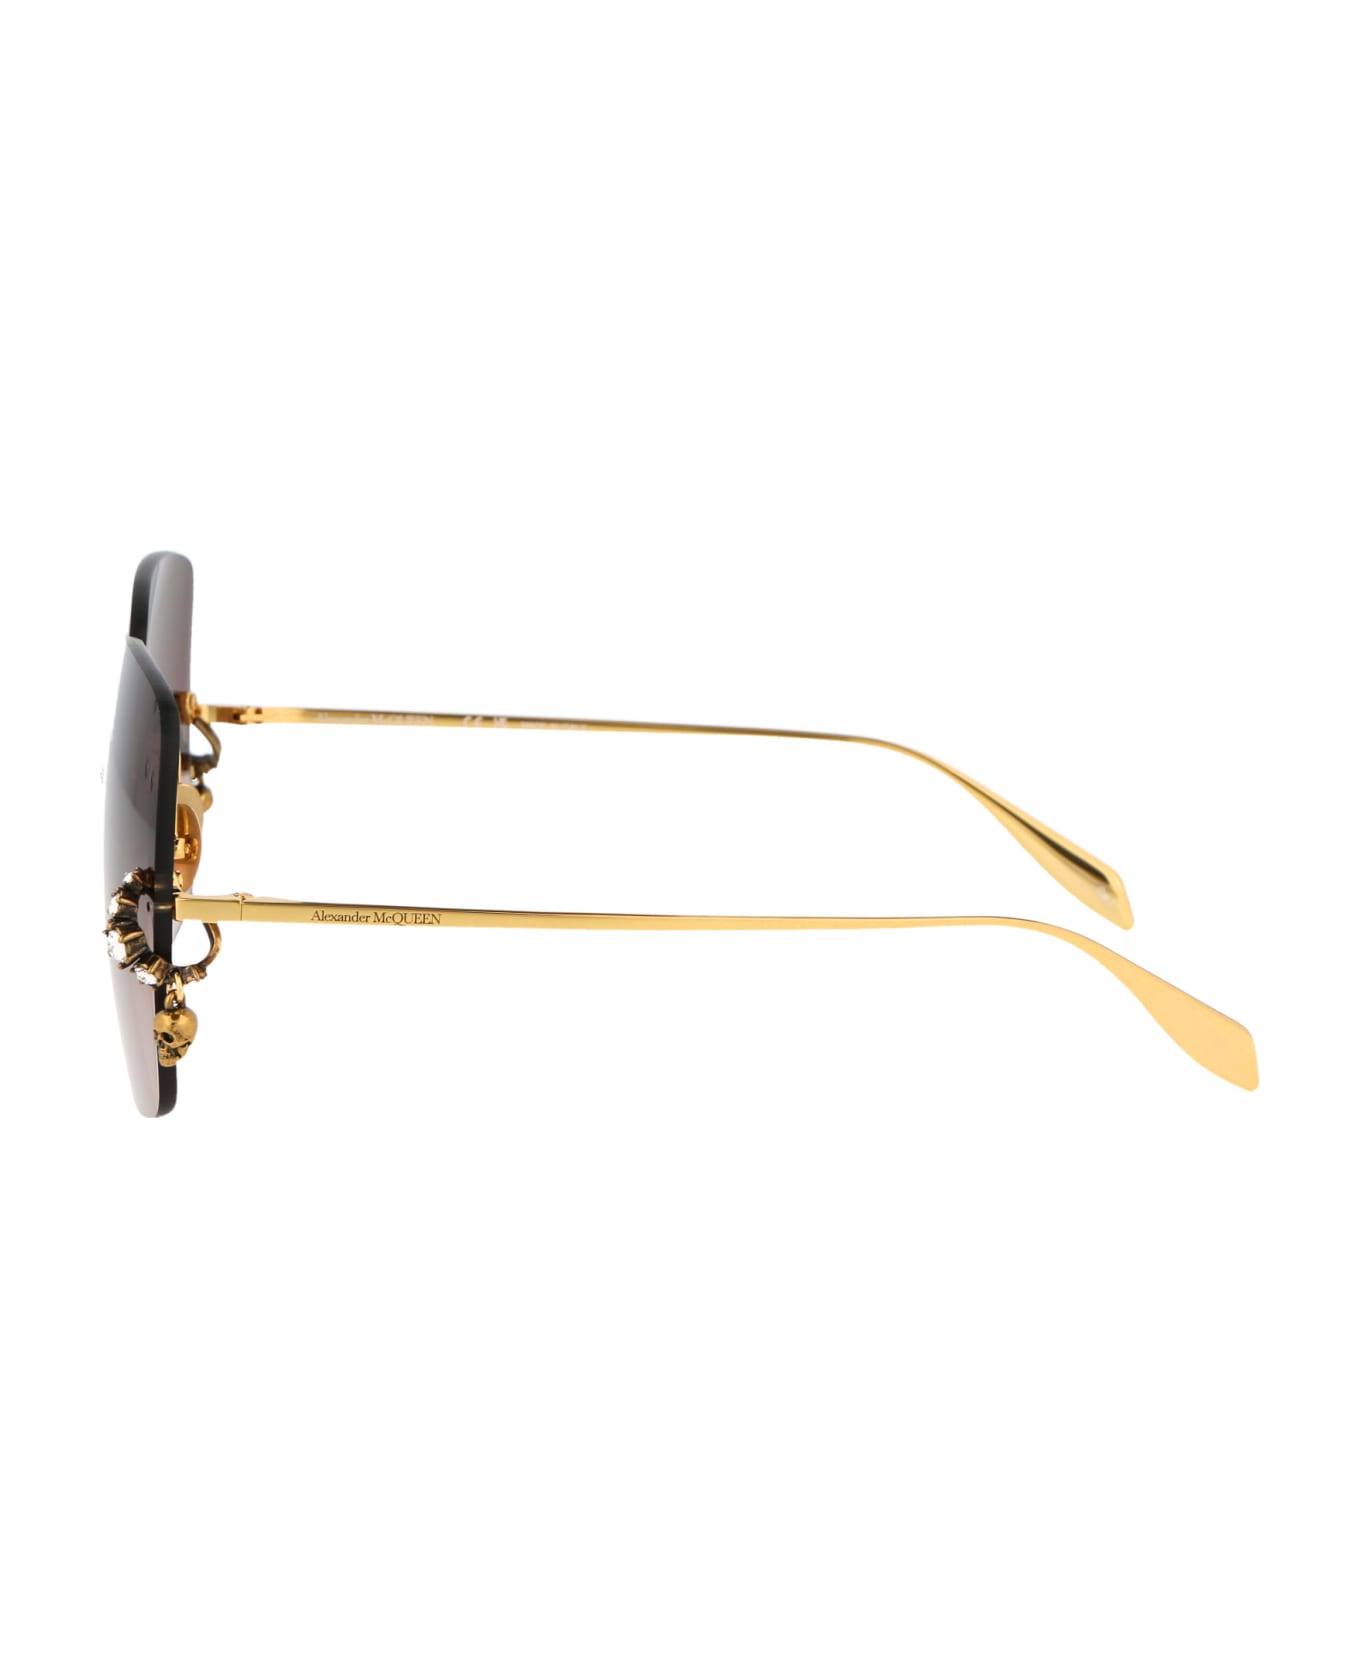 Alexander McQueen Eyewear Am0390s Sunglasses - 002 GOLD GOLD BROWN